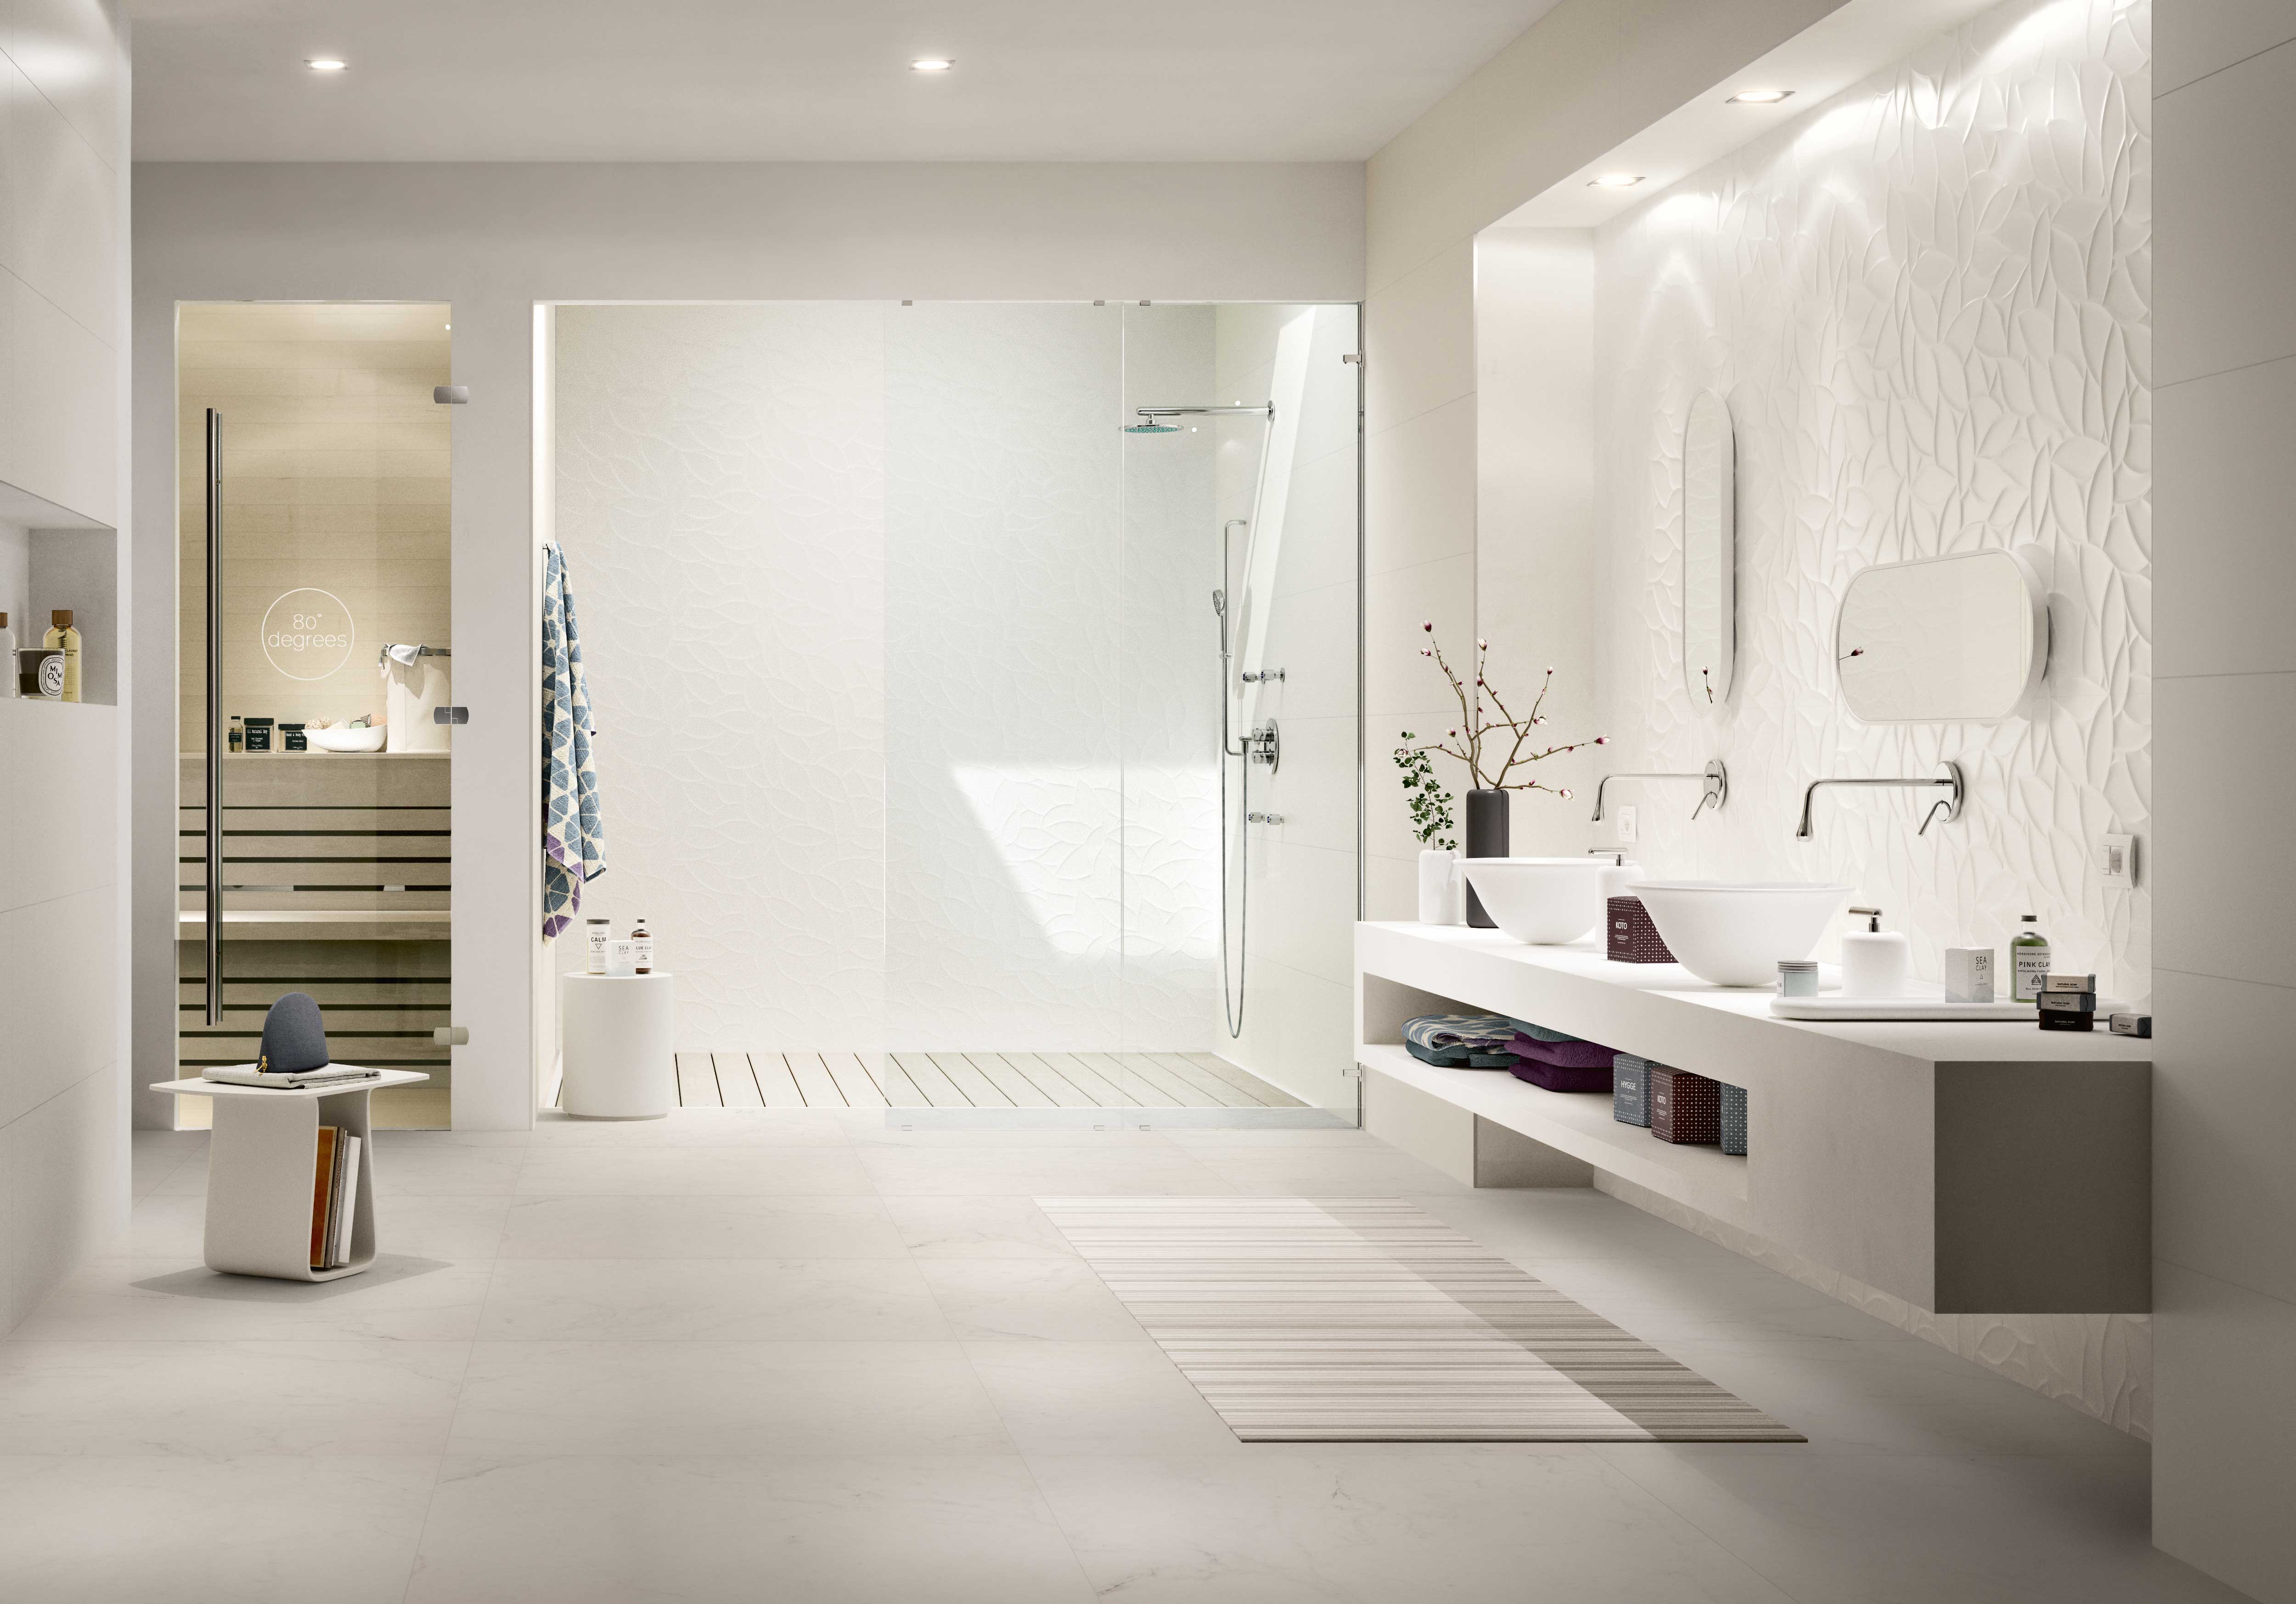 Badezimmer puristisch: weiße/helle Farben, offene Dusche, Sauna